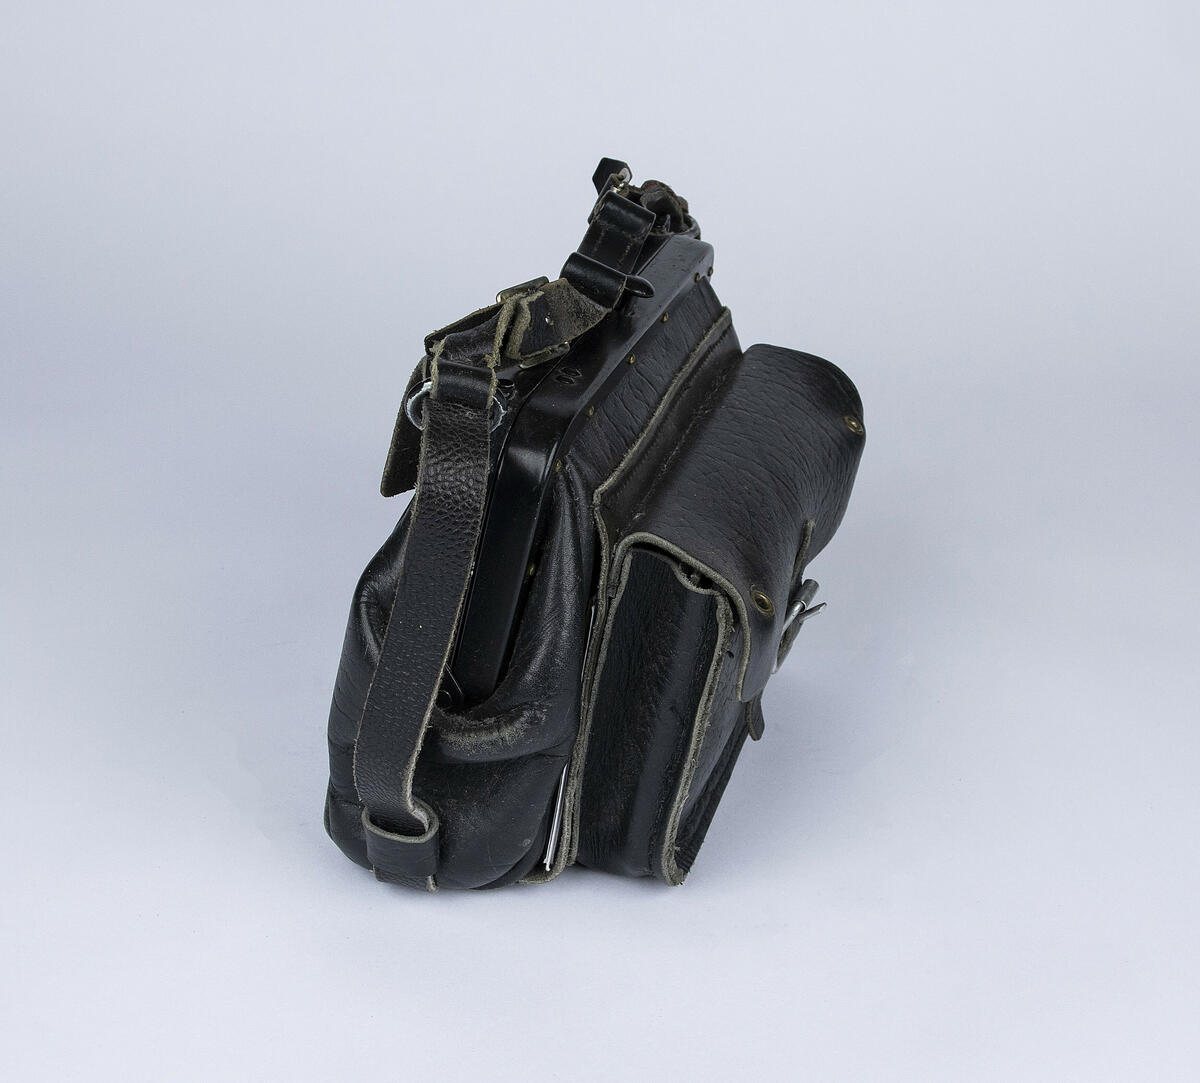 Konduktørveske i sort skinn med metallbøyle. Vesken har ulike rom for myntsorter, sedler, kort og andre ting. Vesken har to hull på fremste lomme der myntapparat kan plasseres.